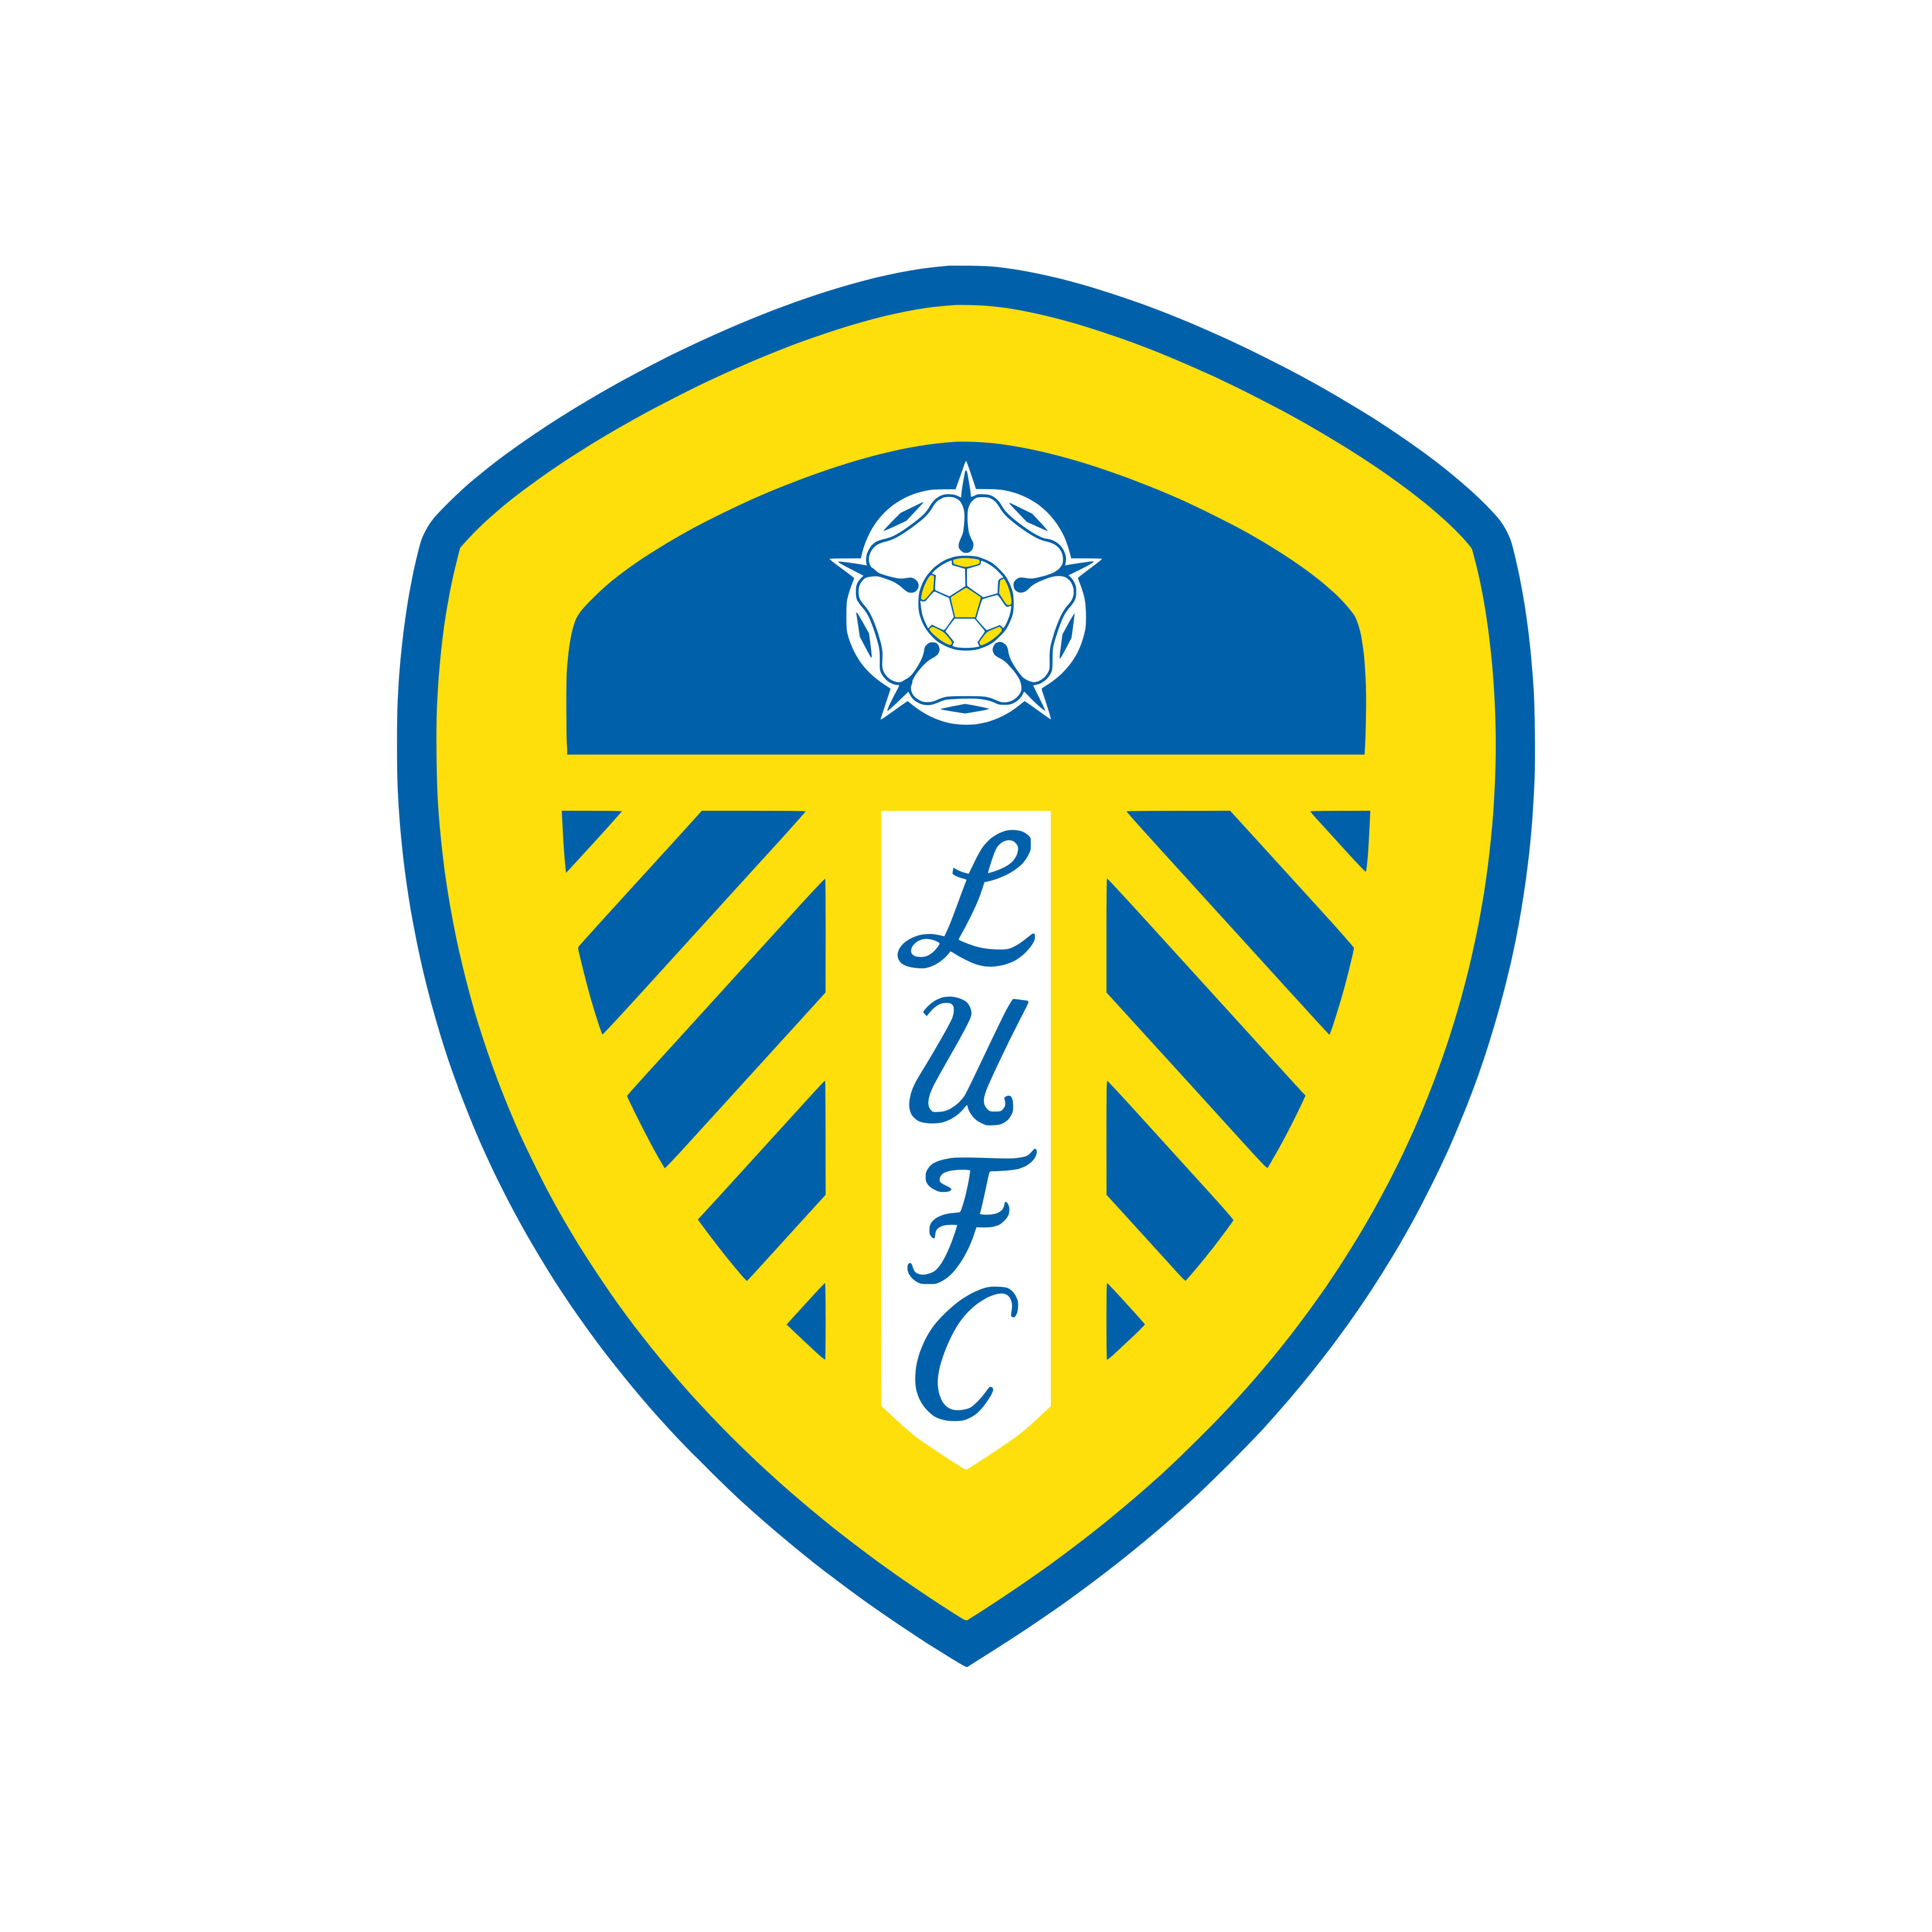 leeds united fc logo 0 - Leeds United FC Logo